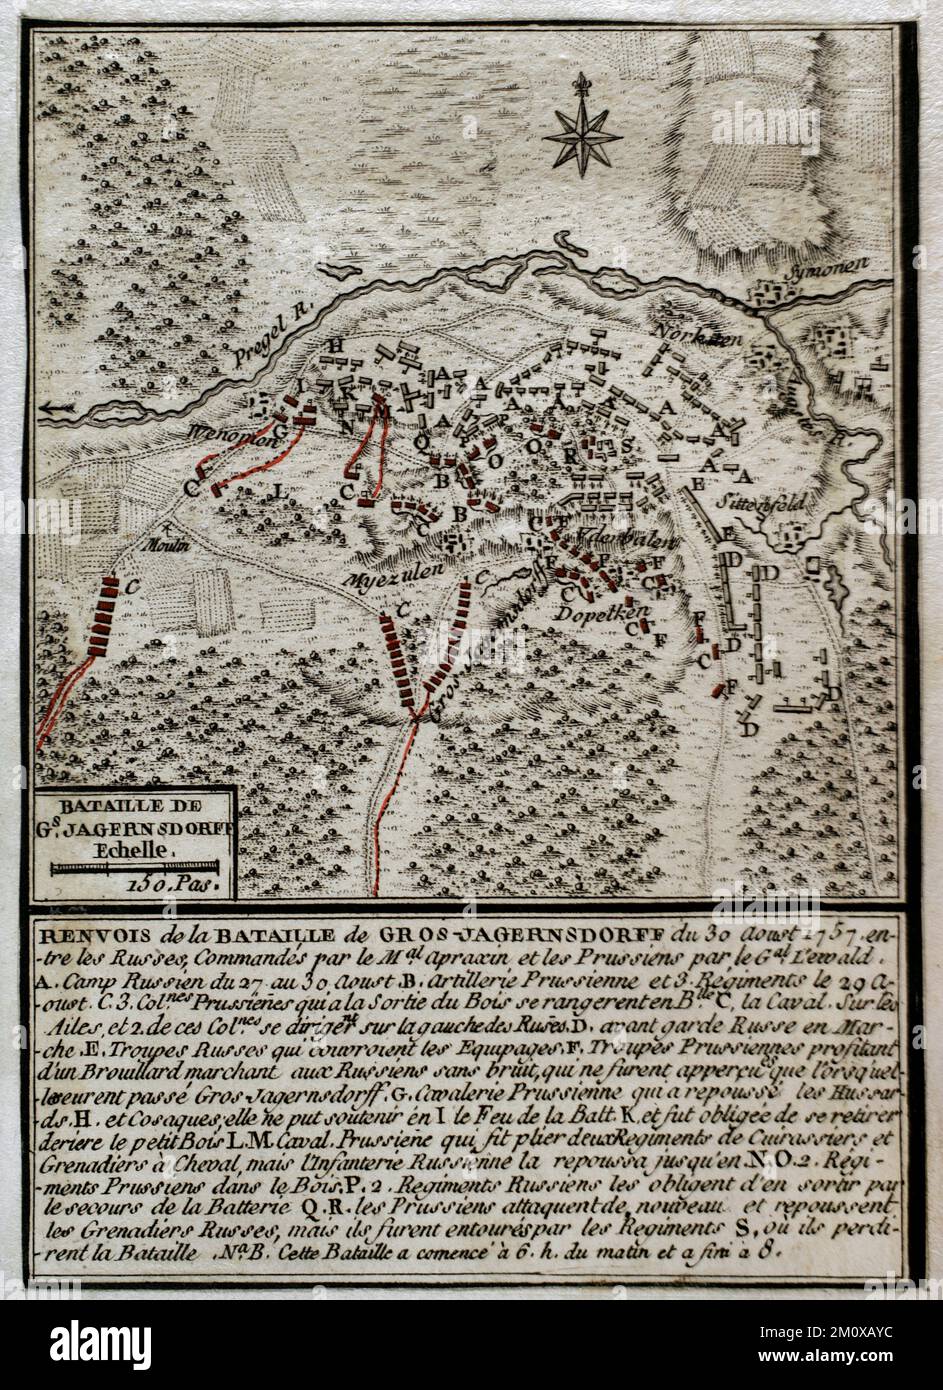 Guerra dei sette anni (1756-1763). Mappa della Battaglia di Gross-Jägersdorf (30 agosto 1757). Prussia orientale. L'esercito russo, sotto il comando del maresciallo di campo Stepan Fyodorovich Apraksin, sconfisse una piccola forza prussiana guidata dal maresciallo di campo Hans von Lehwaldt. Fu la prima battaglia alla quale la Russia prese parte durante il conflitto. Pubblicato nel 1765 dal cartografo Jean de Beaurain (1696-1771) come illustrazione della sua Grande carta della Germania, con gli eventi che si sono verificati durante la Guerra dei sette anni. Incisione e incisione. Biblioteca storica militare di Barcellona (Biblioteca Histórico Militar de B. Foto Stock